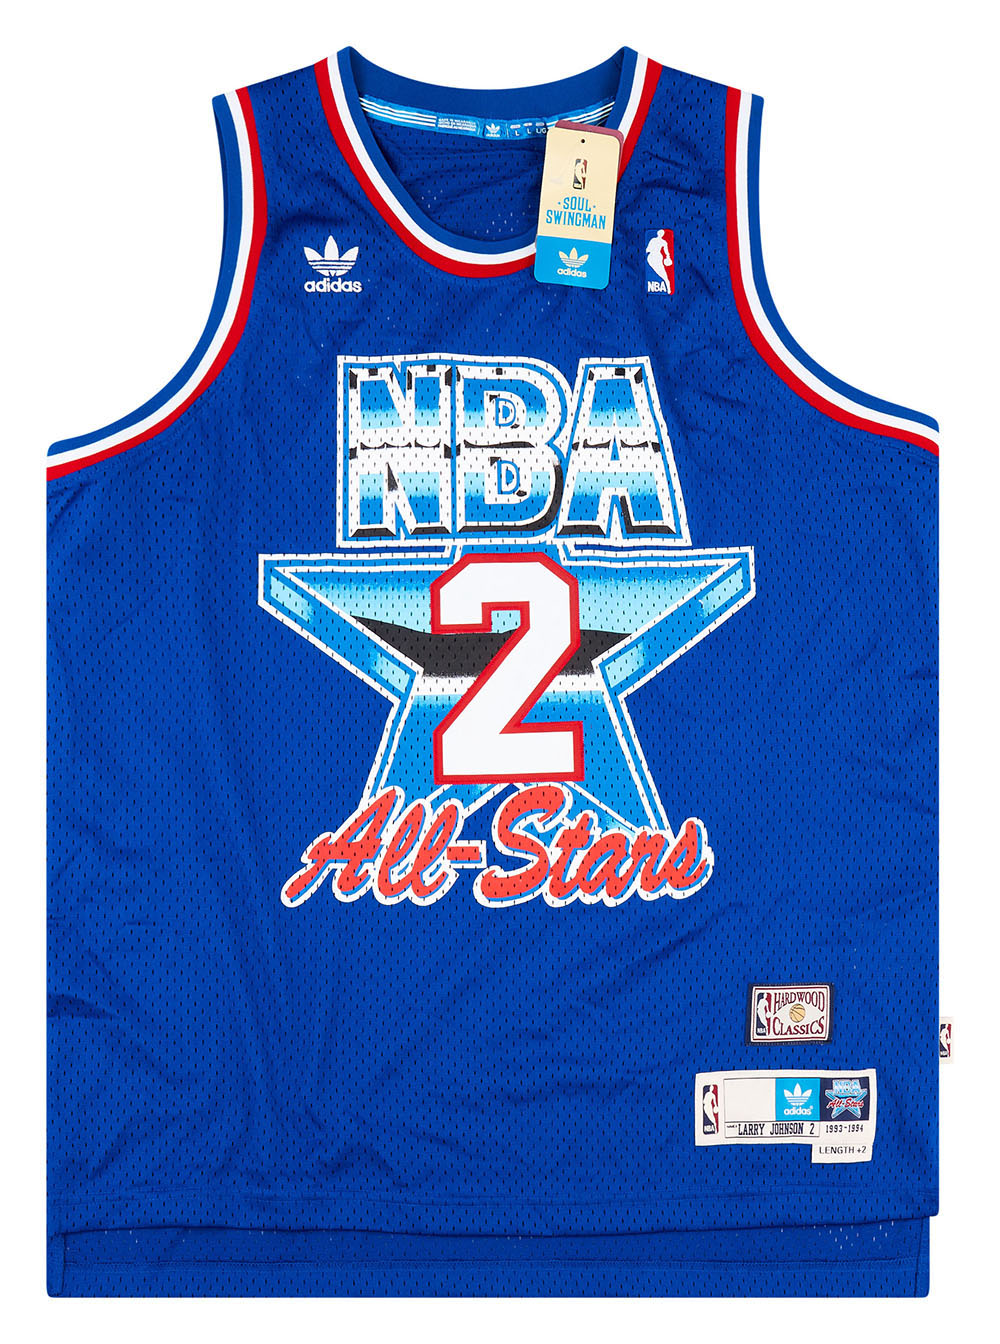 NBA - Get your '90s themed adidas NBA Hardwood Classics jerseys